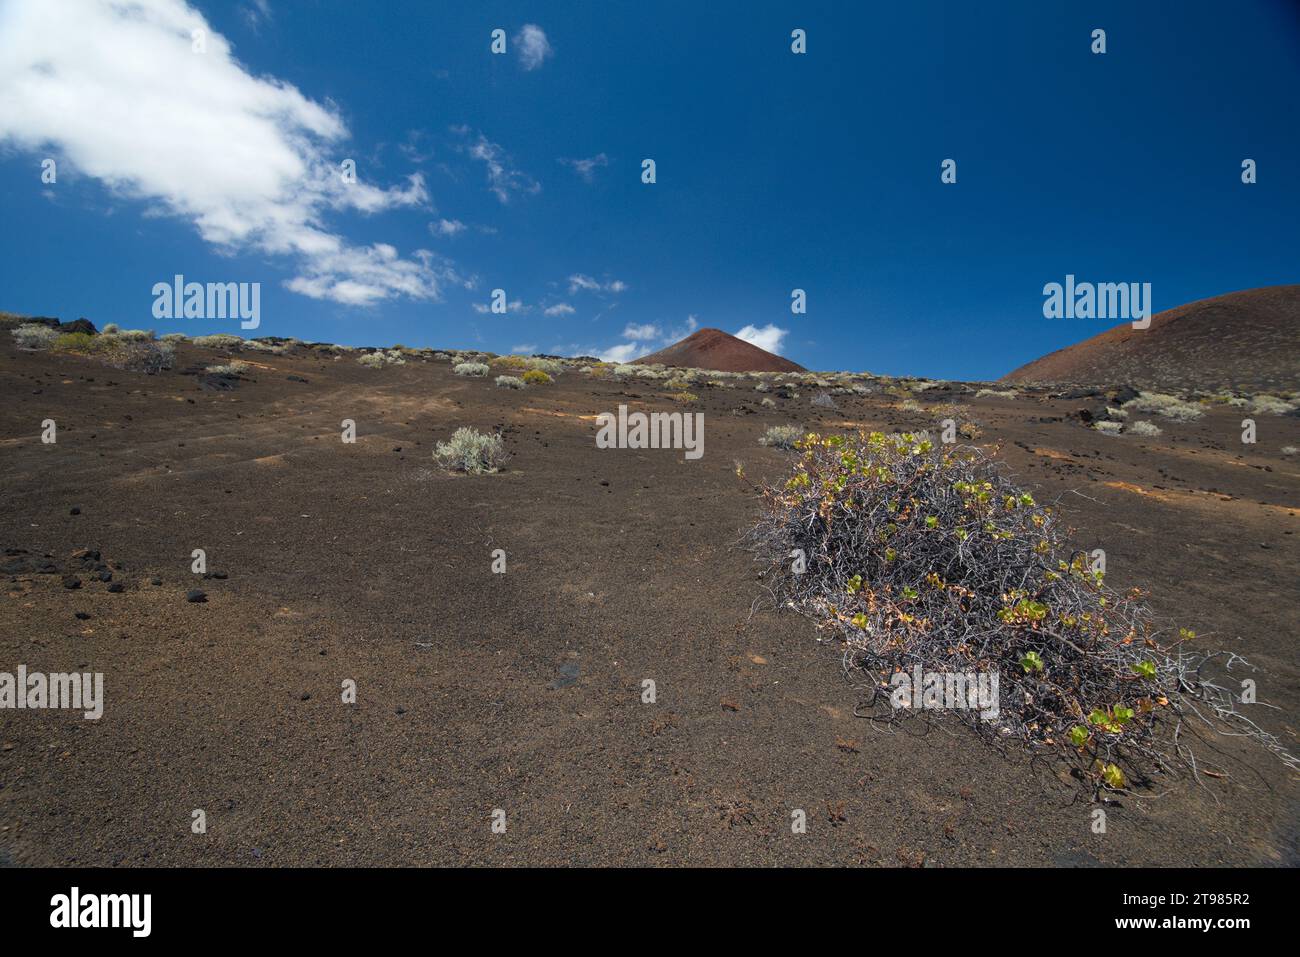 volcanic landscape of the Island of El Hierro, Canary Islands. paisaje volcánico de la Isla de El Hierro, Canarias Stock Photo